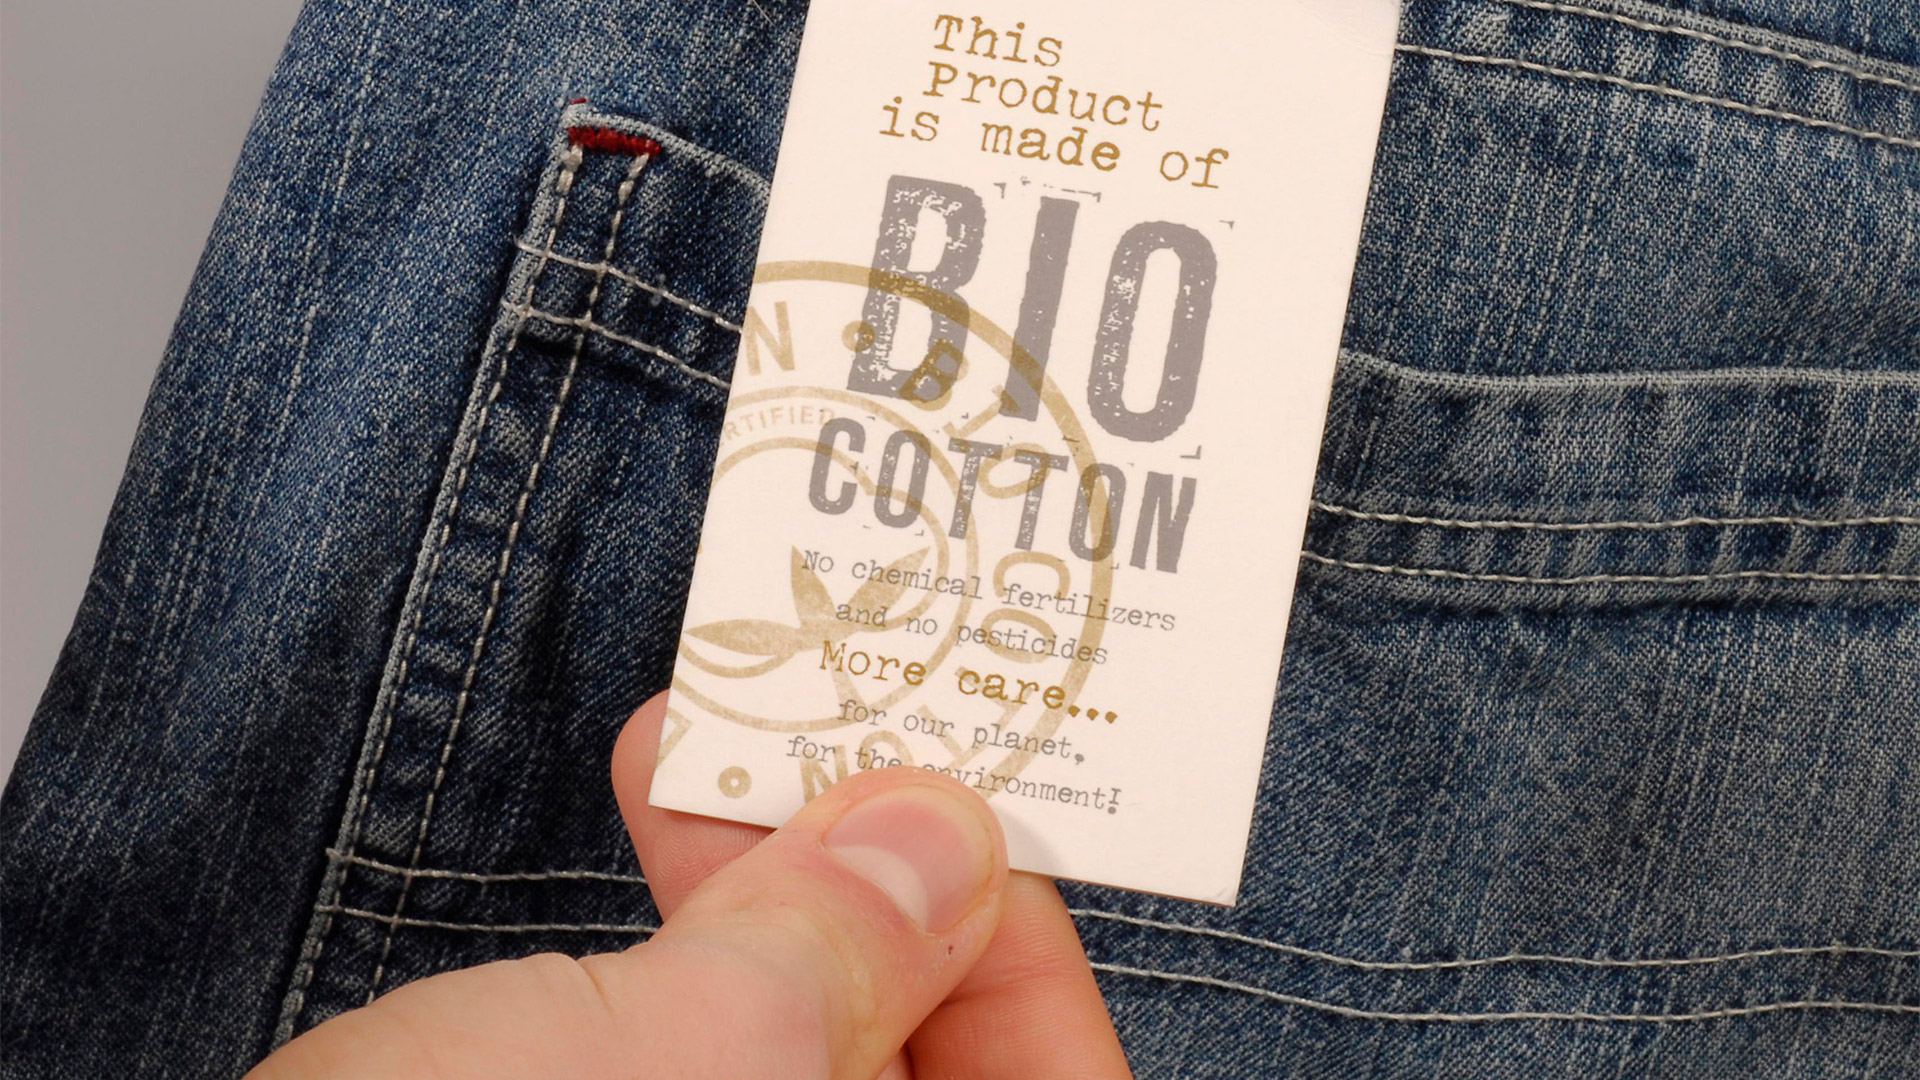 Bio Baumwolle Label an einer Jeans  | picture alliance / imageBROKER